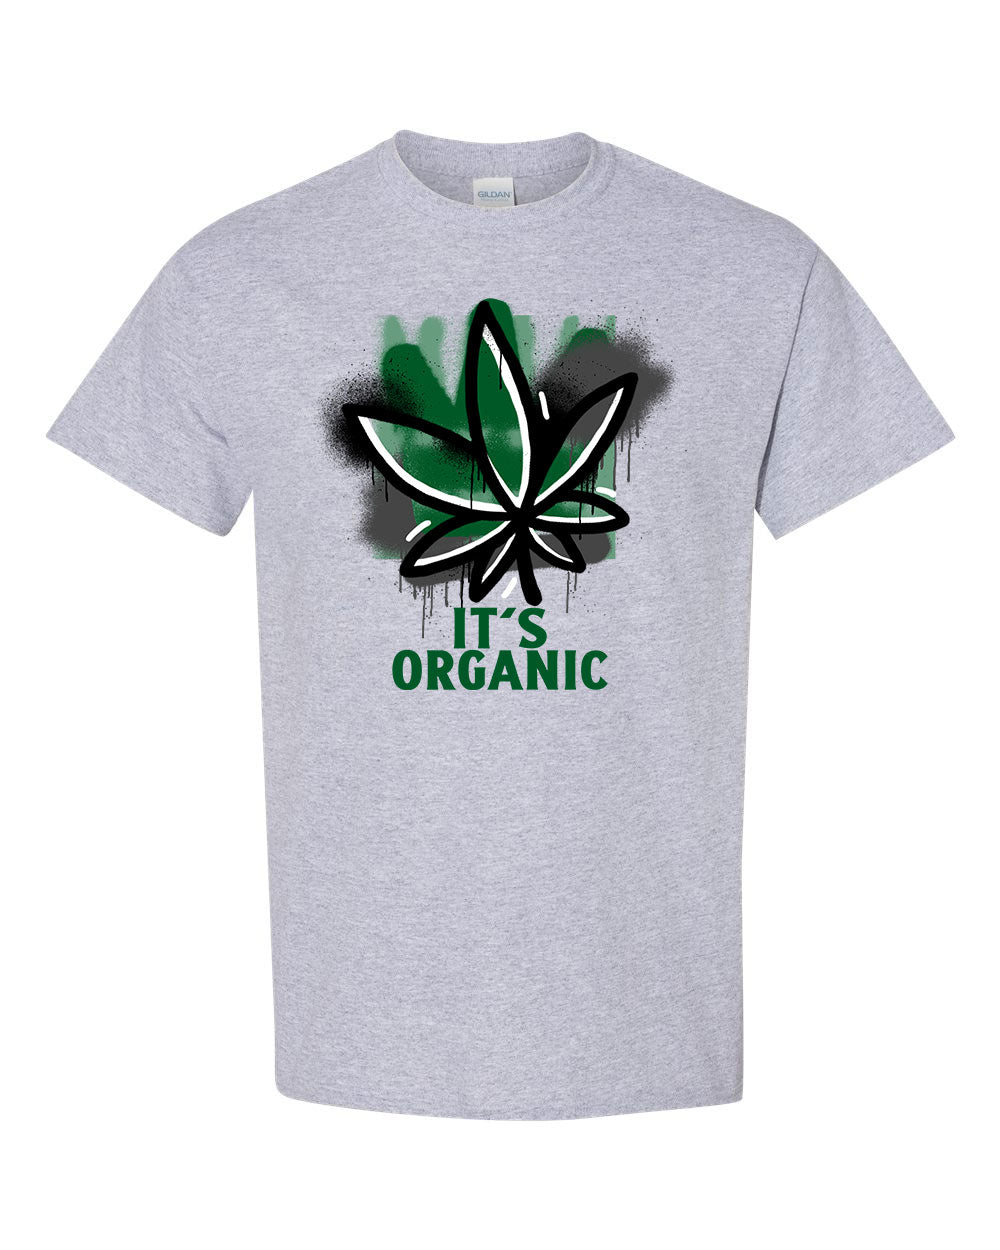 It's Organic